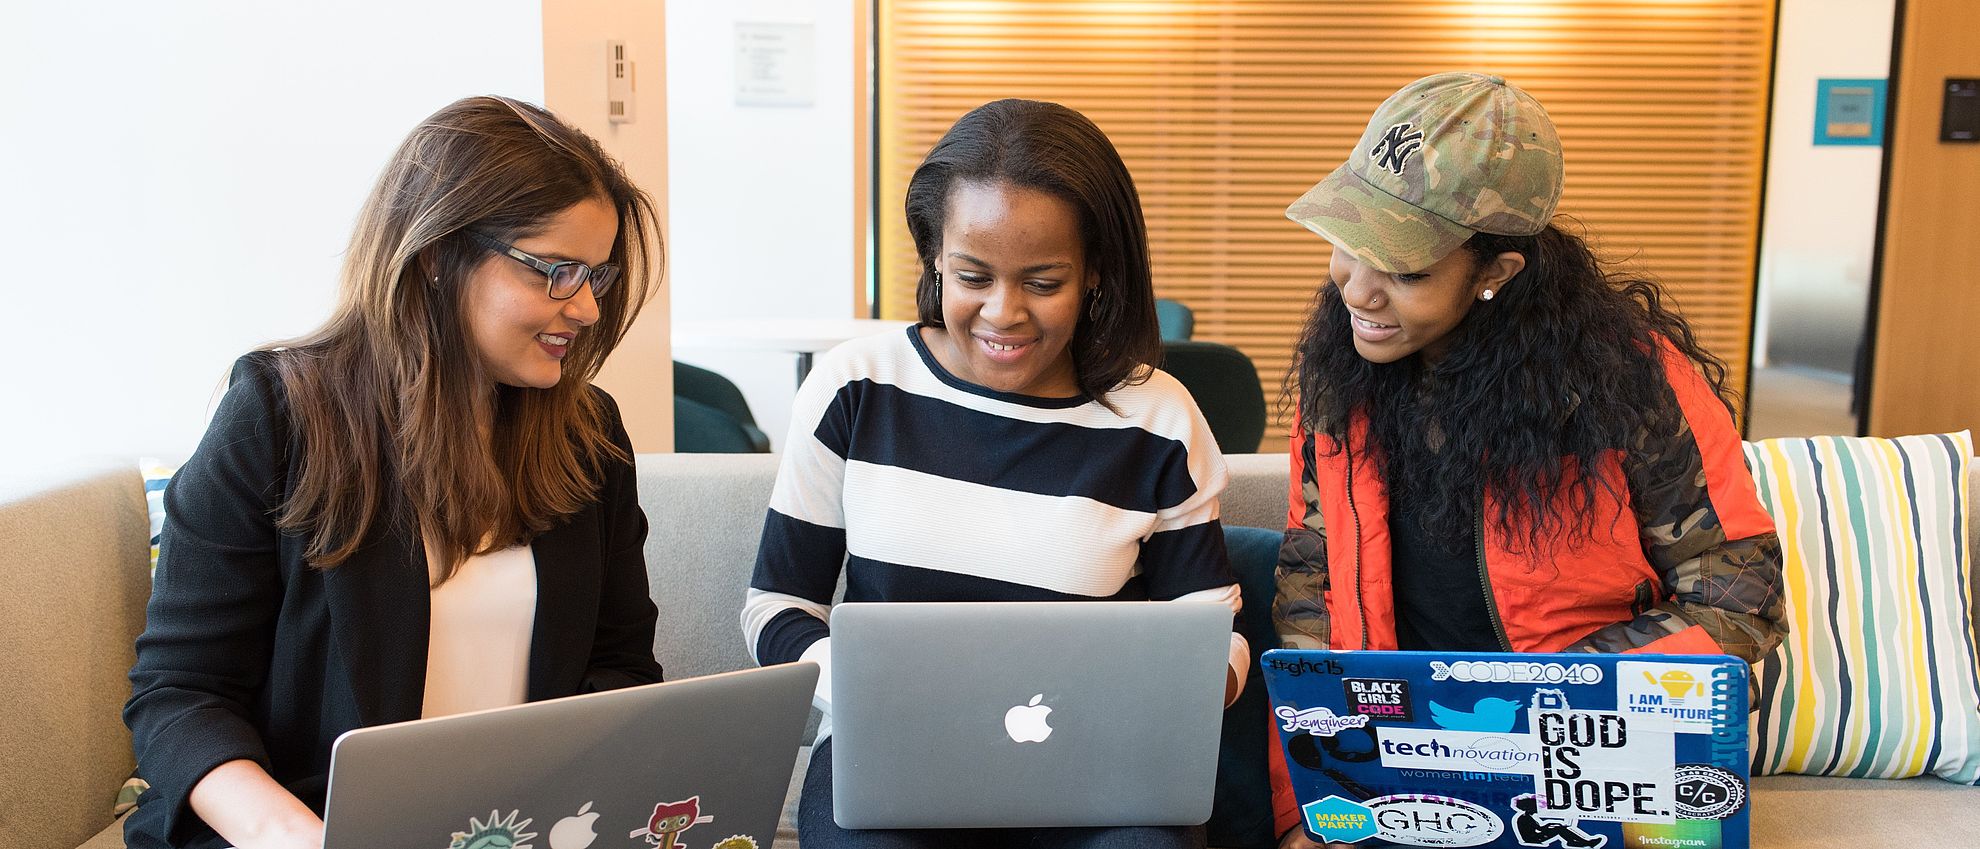 Drei Frauen schauen vergnügt gemeinsam auf einen Laptop in der Mitte und lächeln konzentriert